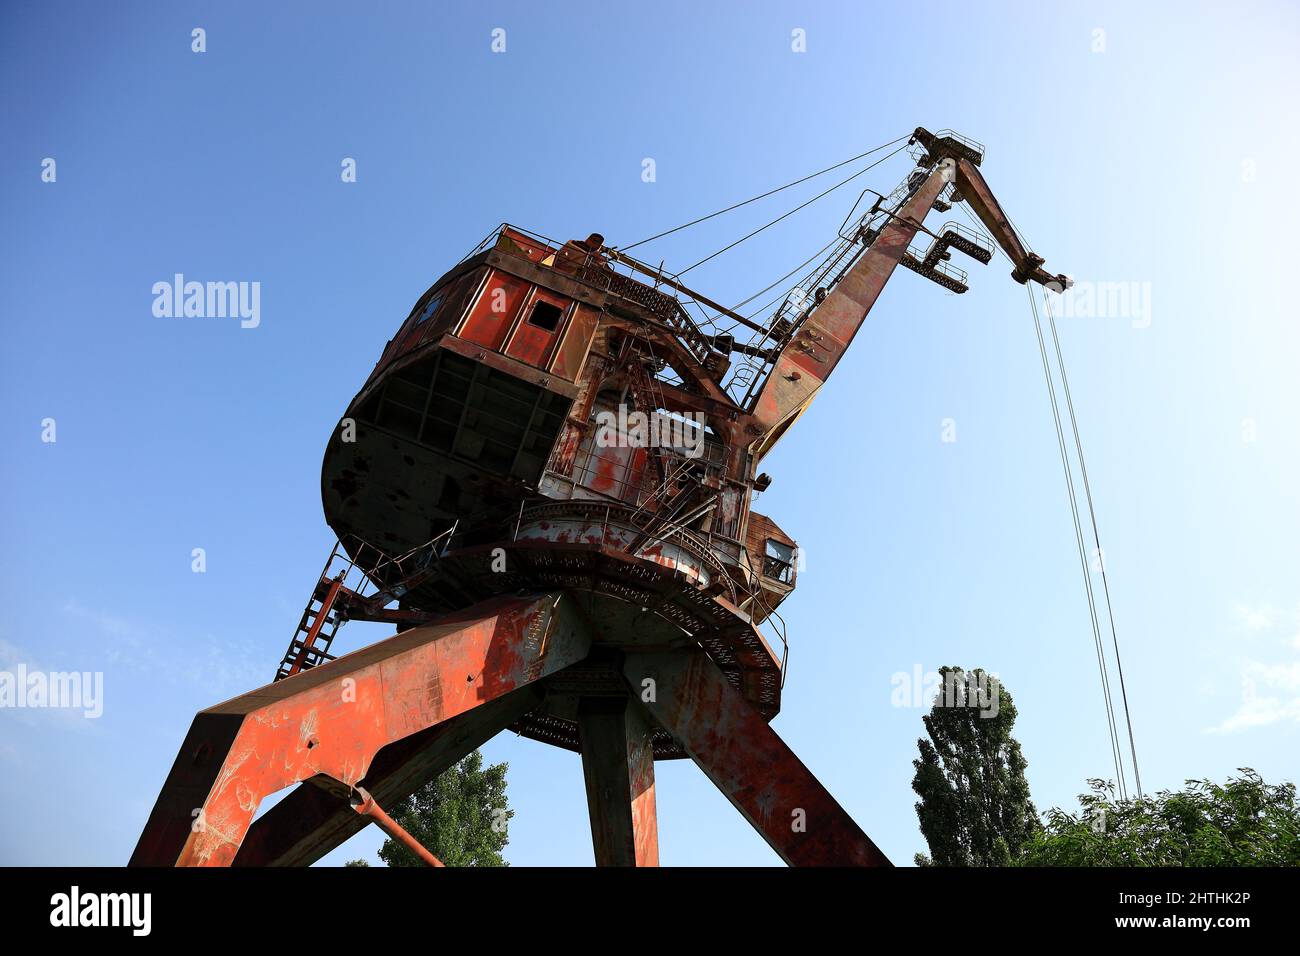 Ukraine, Sperrzone, Pripjat, in der unbewohnbaren 30-Kilometer-Zone um das Kraftwerk von Tschernobyl und der Arbeitersiedlung Pripjat, Kran am Schiffs Stock Photo